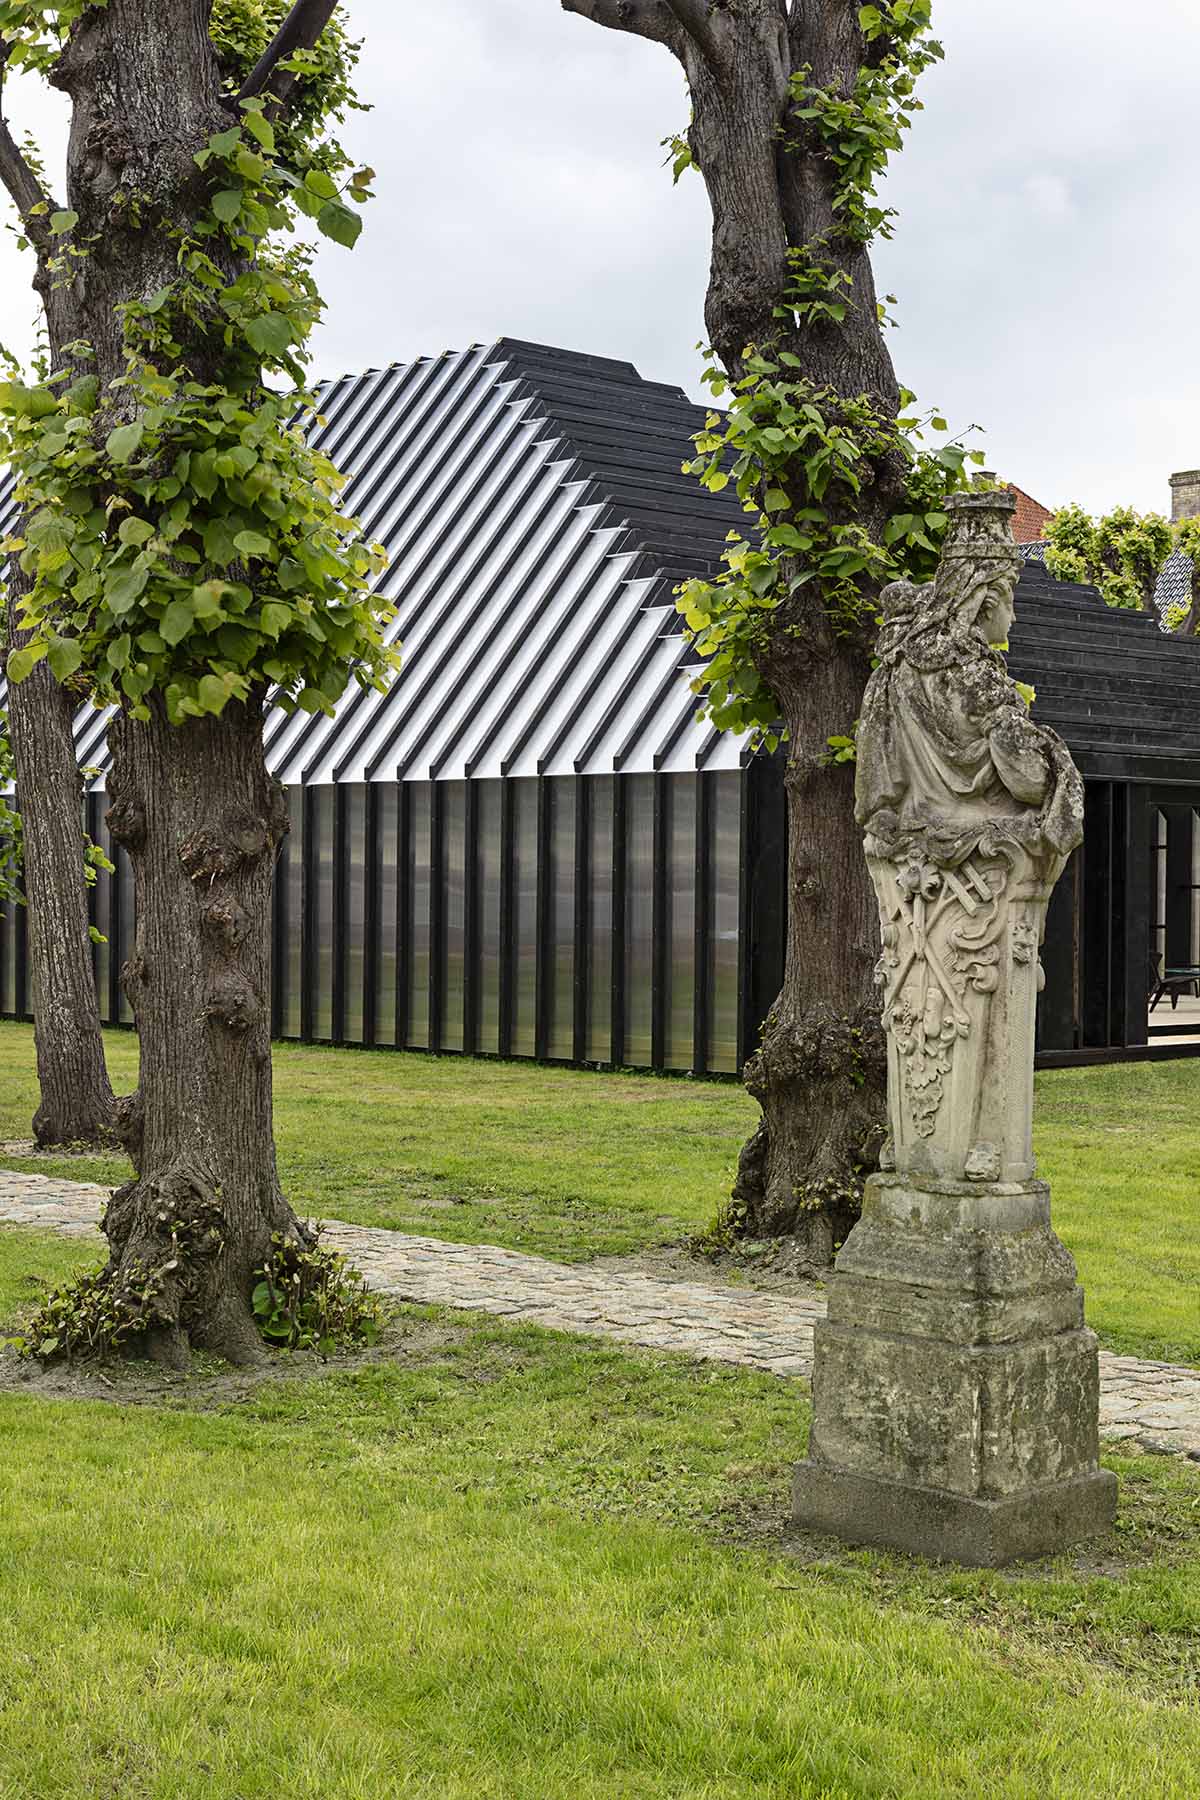 Хеннинг Ларсен построил прозрачный павильон в виде ракушки, чтобы отпраздновать 150-летие Фрица Хансена.  